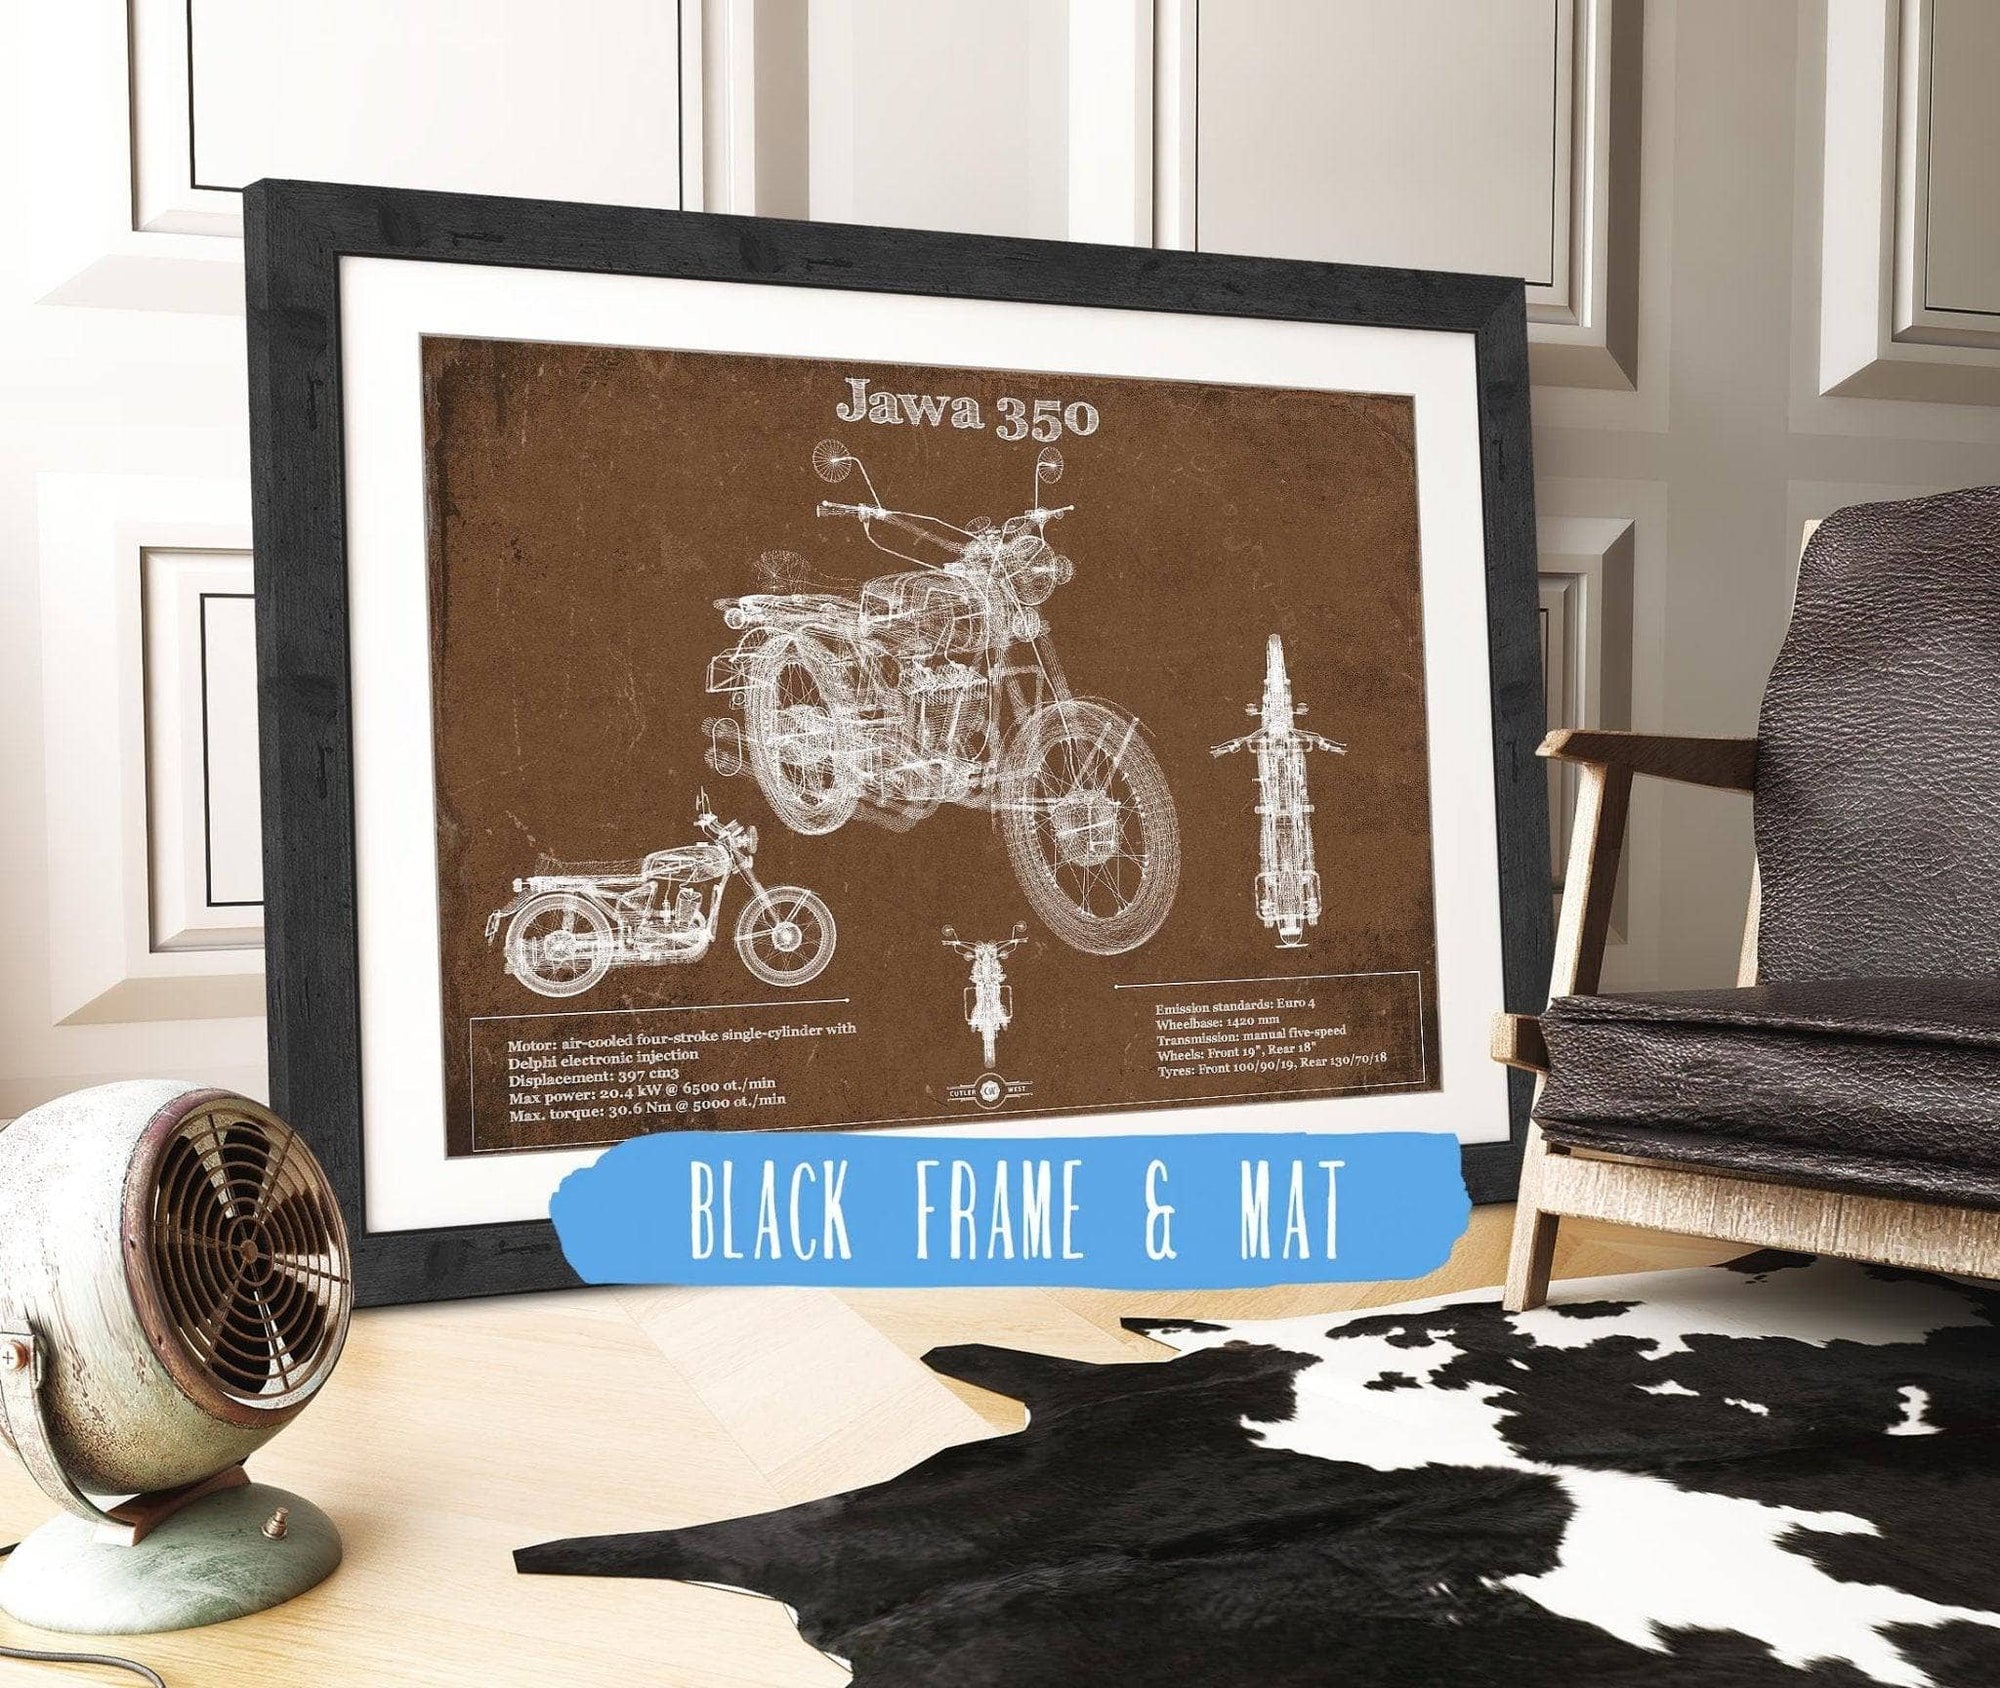 Cutler West 14" x 11" / Black Frame & Mat Jawa 350 Vintage Blueprint Motorcycle Patent Print 933350052_18858